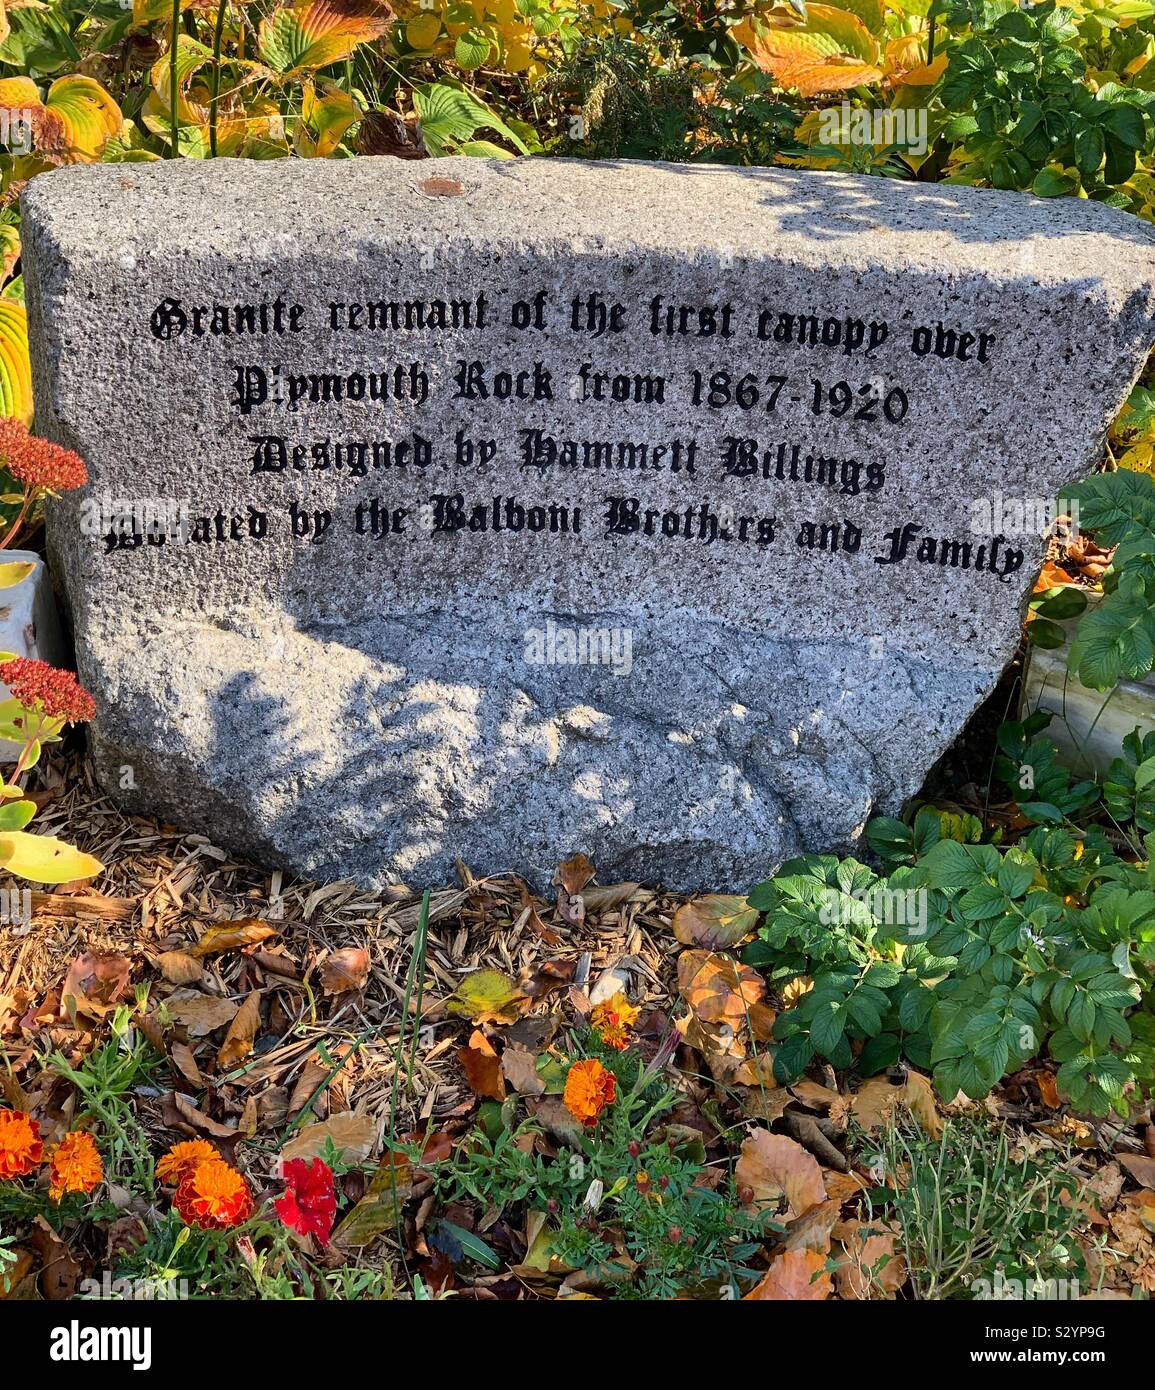 Inschrift lautet "Granit Überbleibsel der ersten Vordach über Plymouth Rock von 1867-1920. Von Hammett Billings konzipiert. Durch die Balboni Brüder und Familie." in Plymouth, Massachusetts, USA gespendet Stockfoto